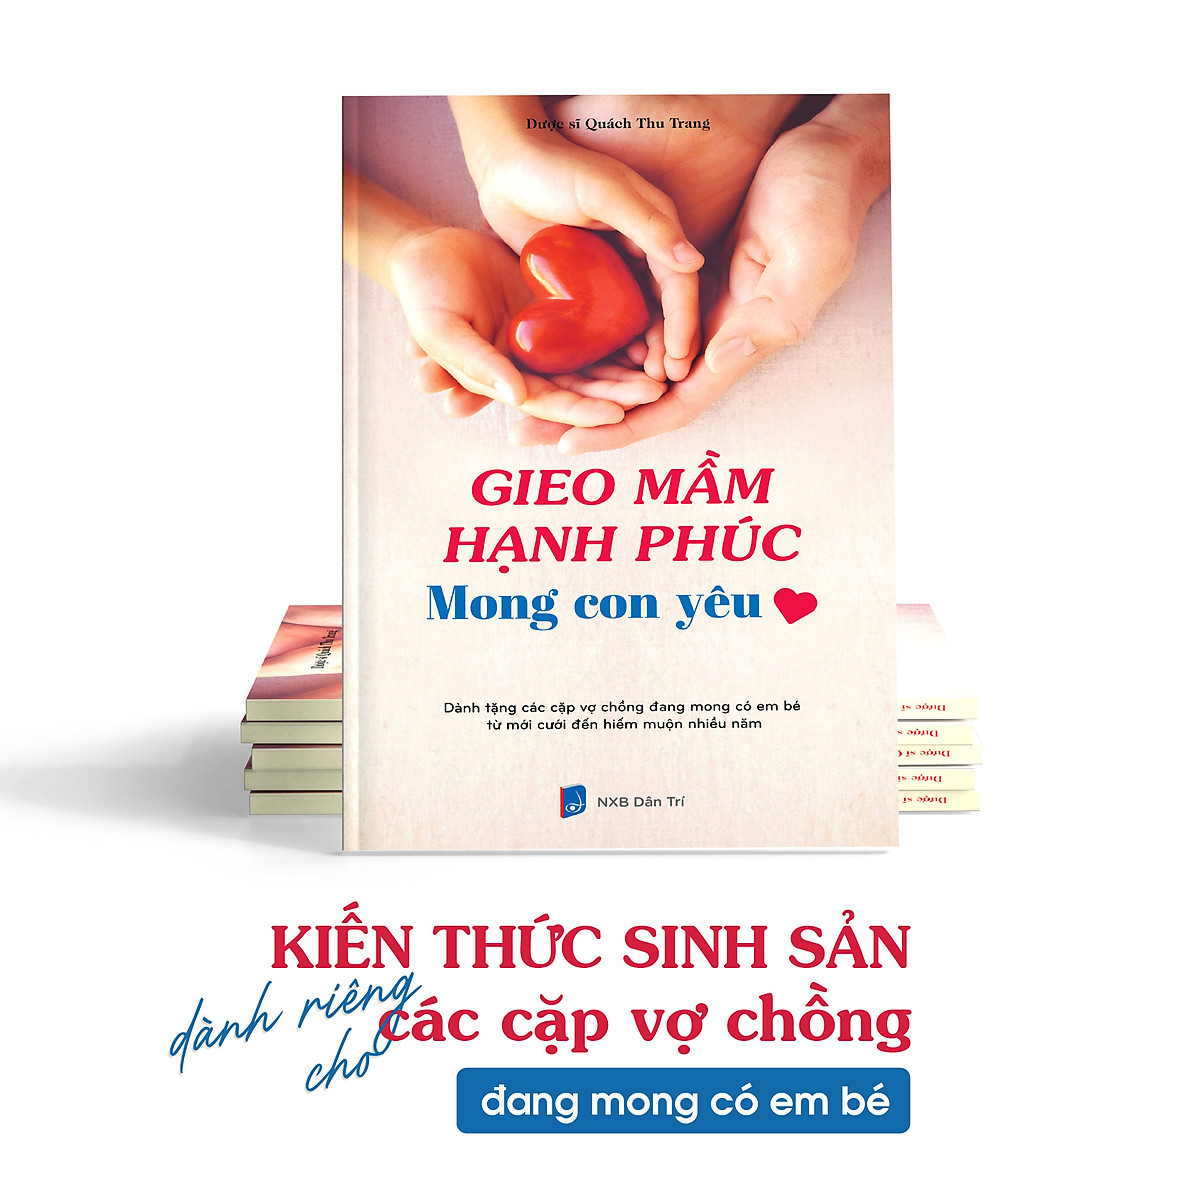 Sách Gieo mầm hạnh phúc Mong con yêu - Kiến thức sinh sản dành riêng cho các vợ chồng mong con